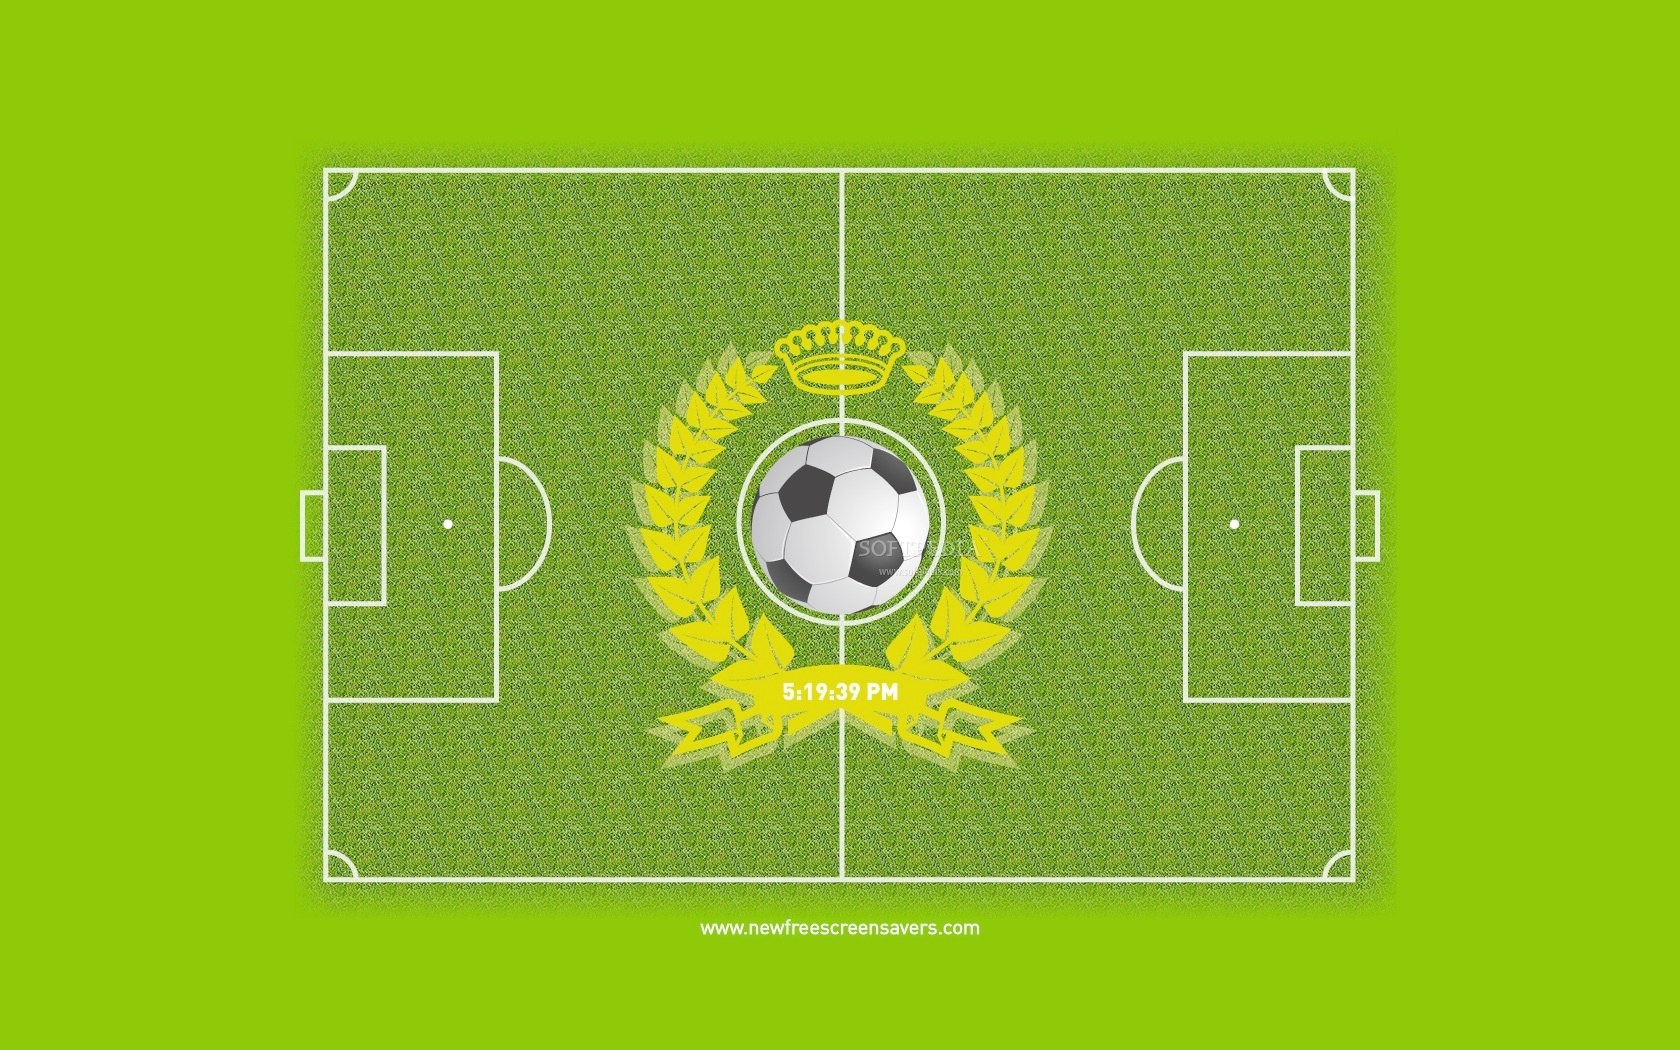  high definition wallpapercomphotomichigan state football wallpaper